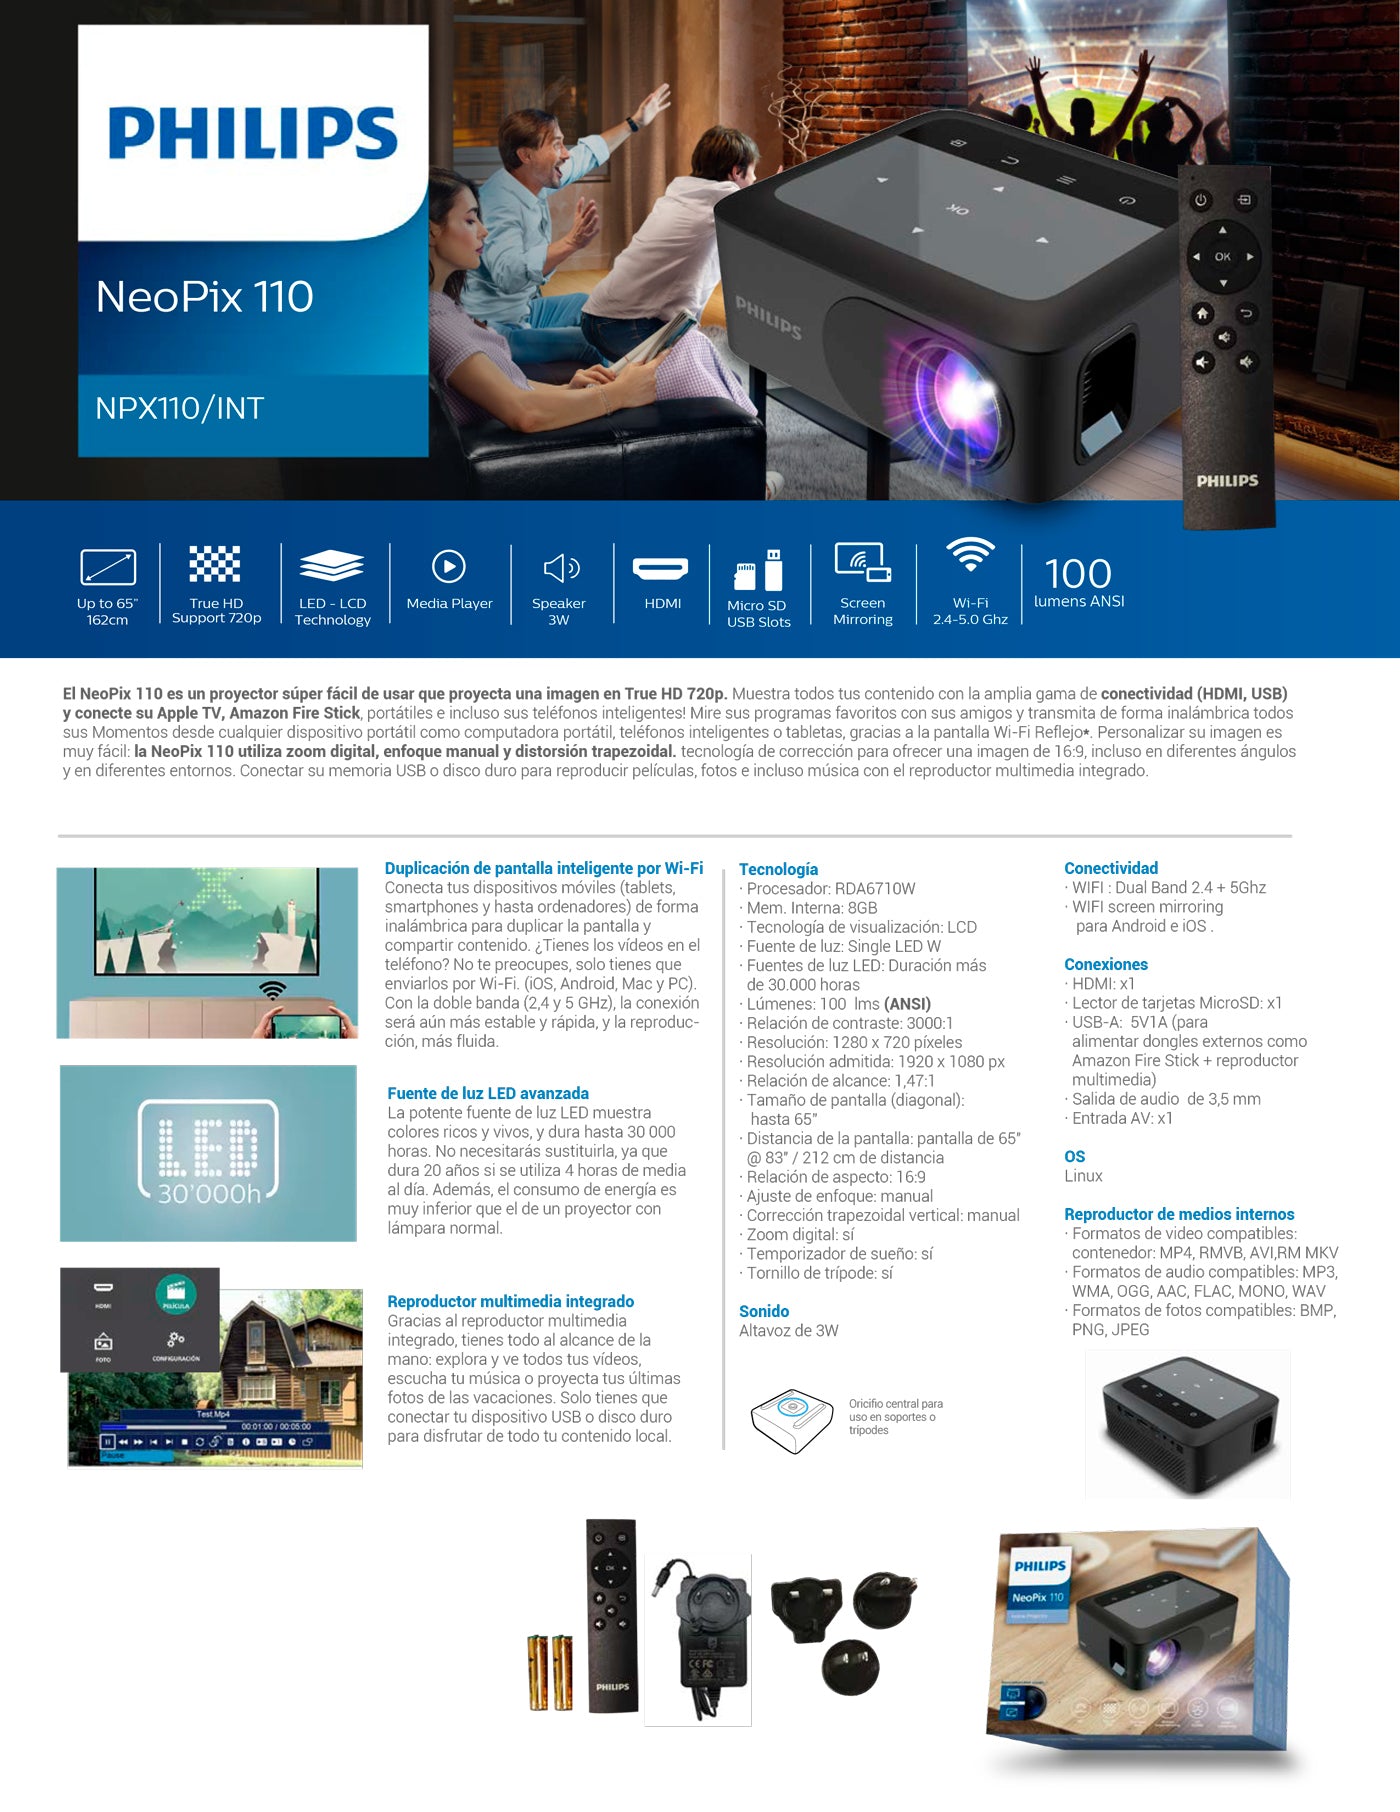 Proyector Philips Neopix 110 ❤️ Despacho Rápido – MACROSTORE